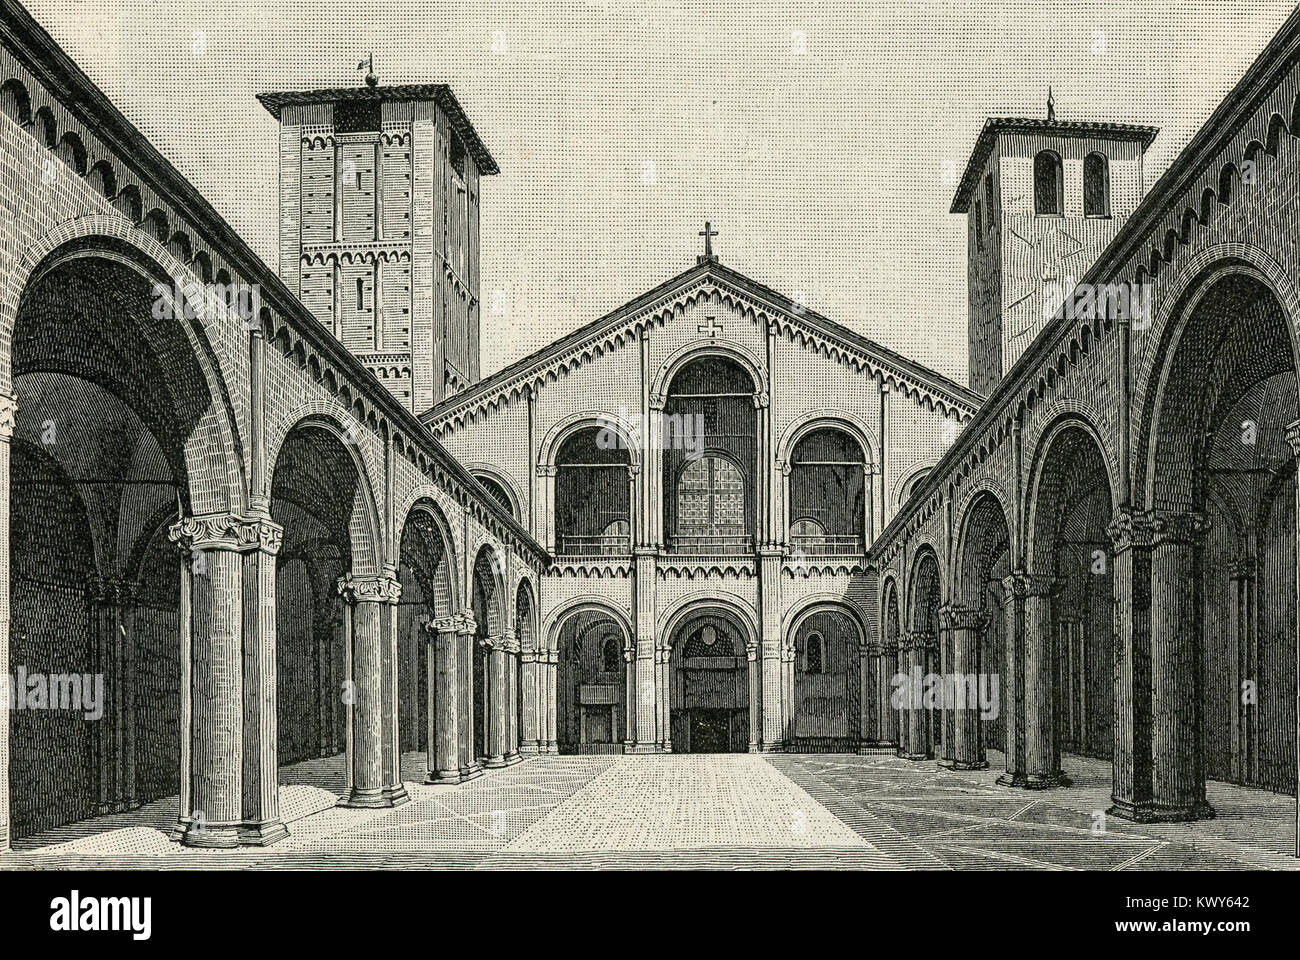 Milano atrio e facciata della Basilica di Sant’Ambrogio Stock Photo